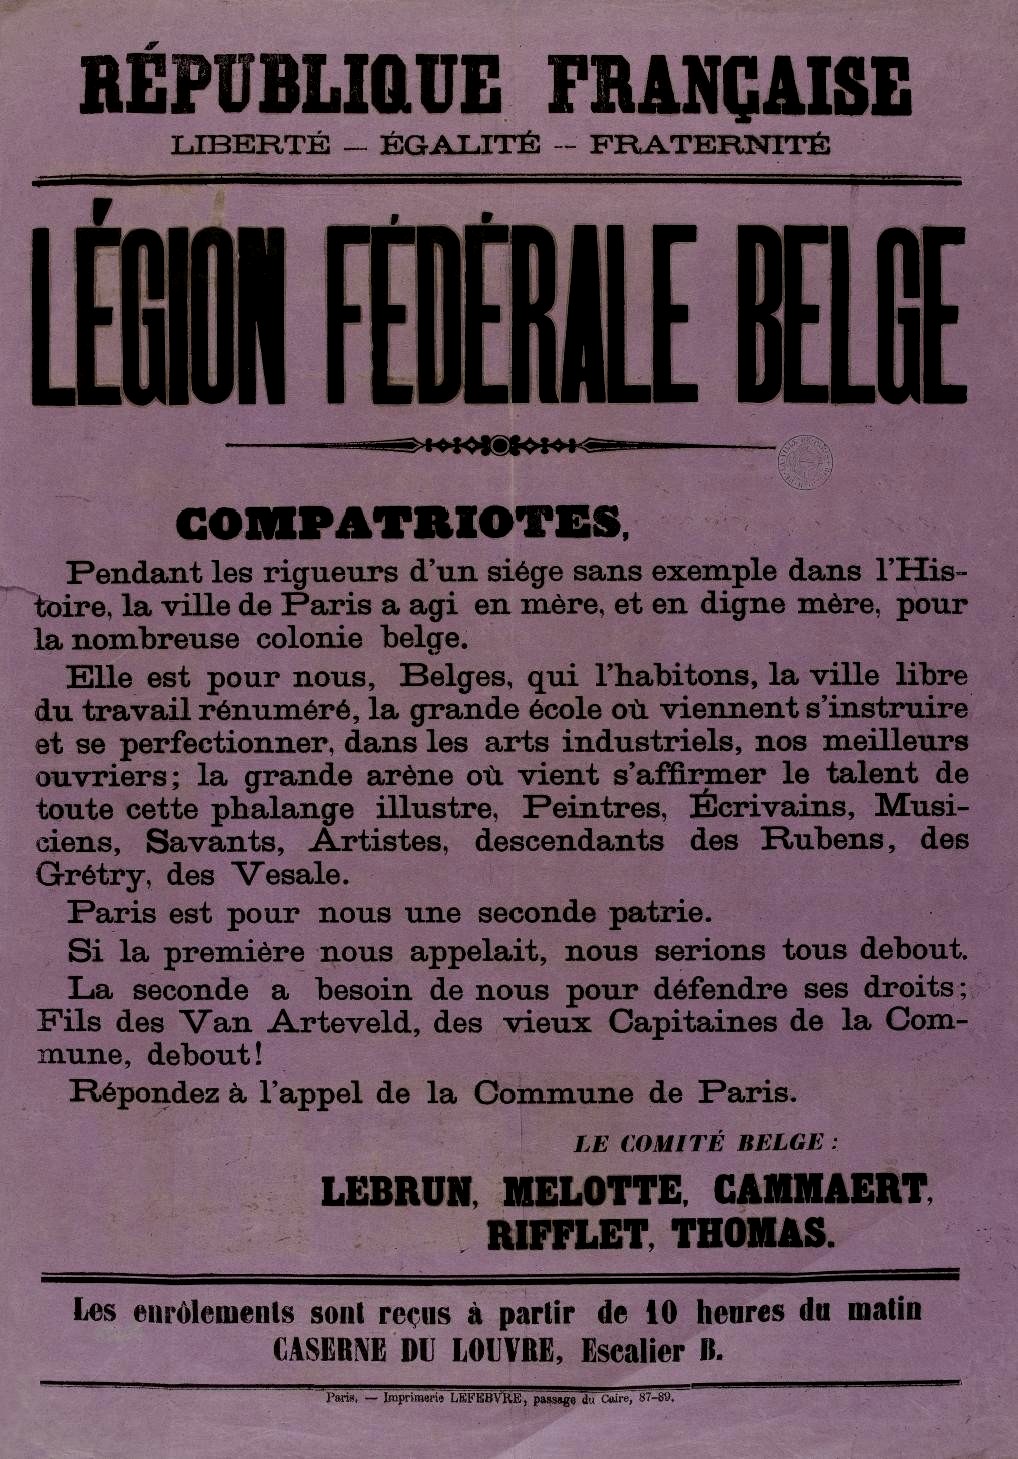 Affiche de la Commune de Paris - Légion fédérale belge